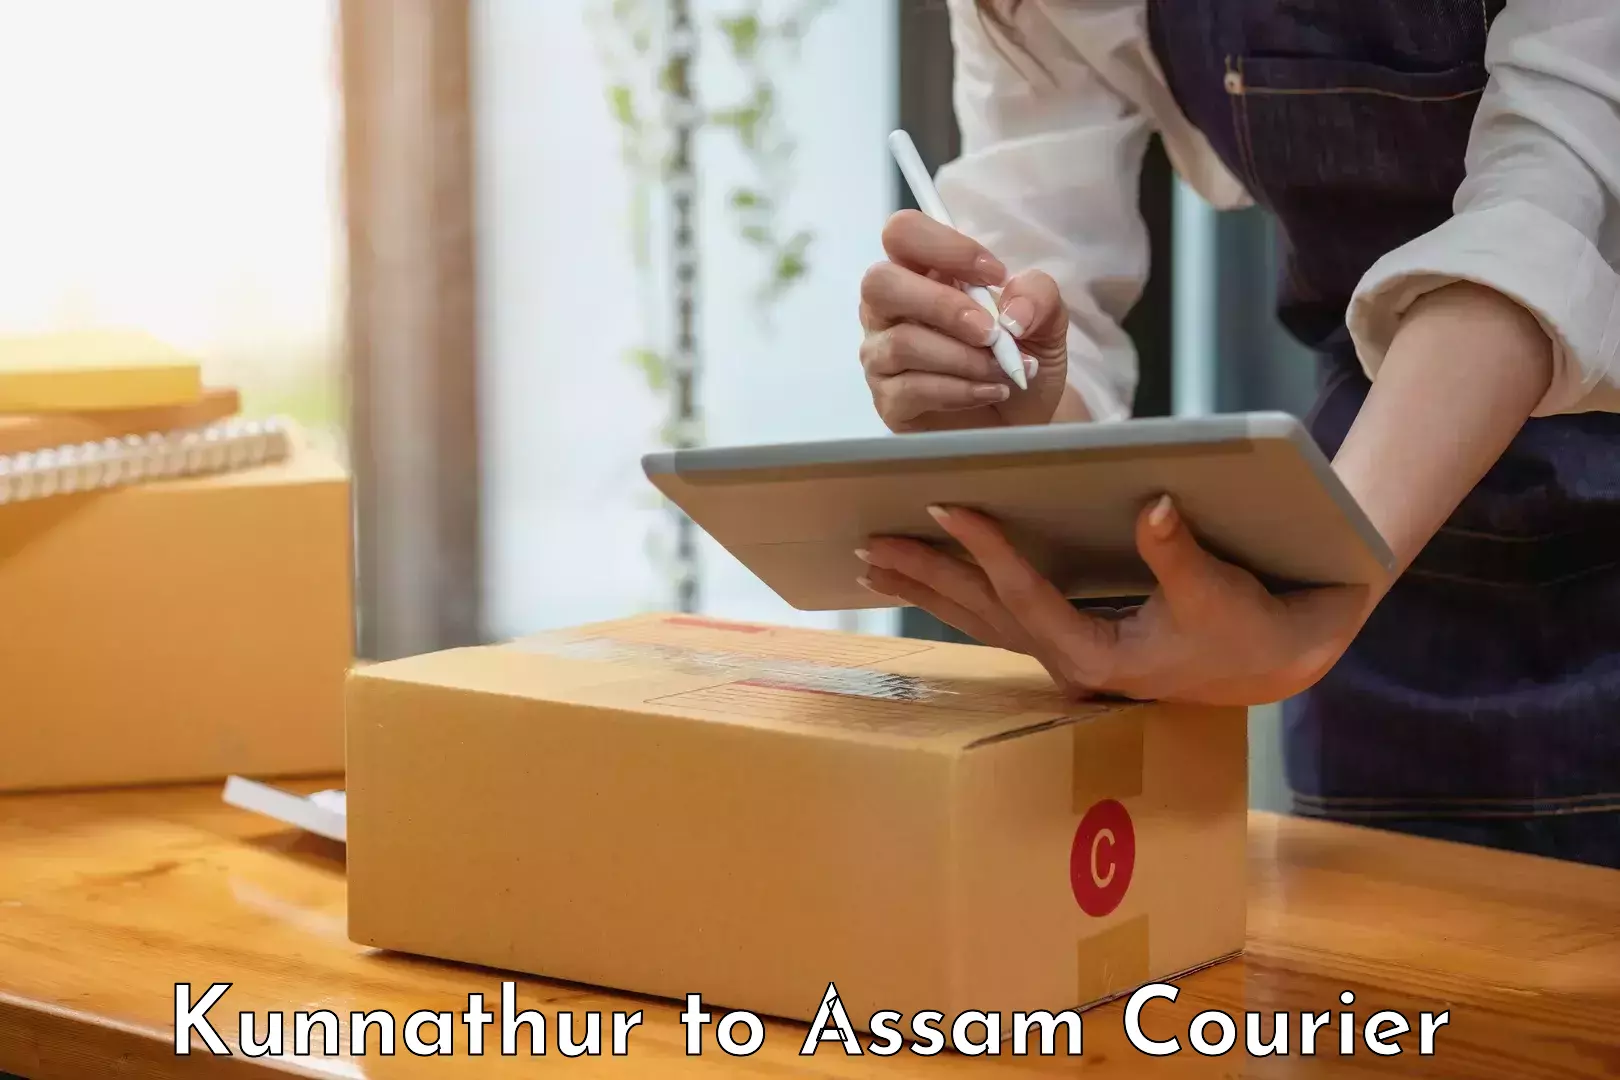 Smart courier technologies Kunnathur to Lala Assam